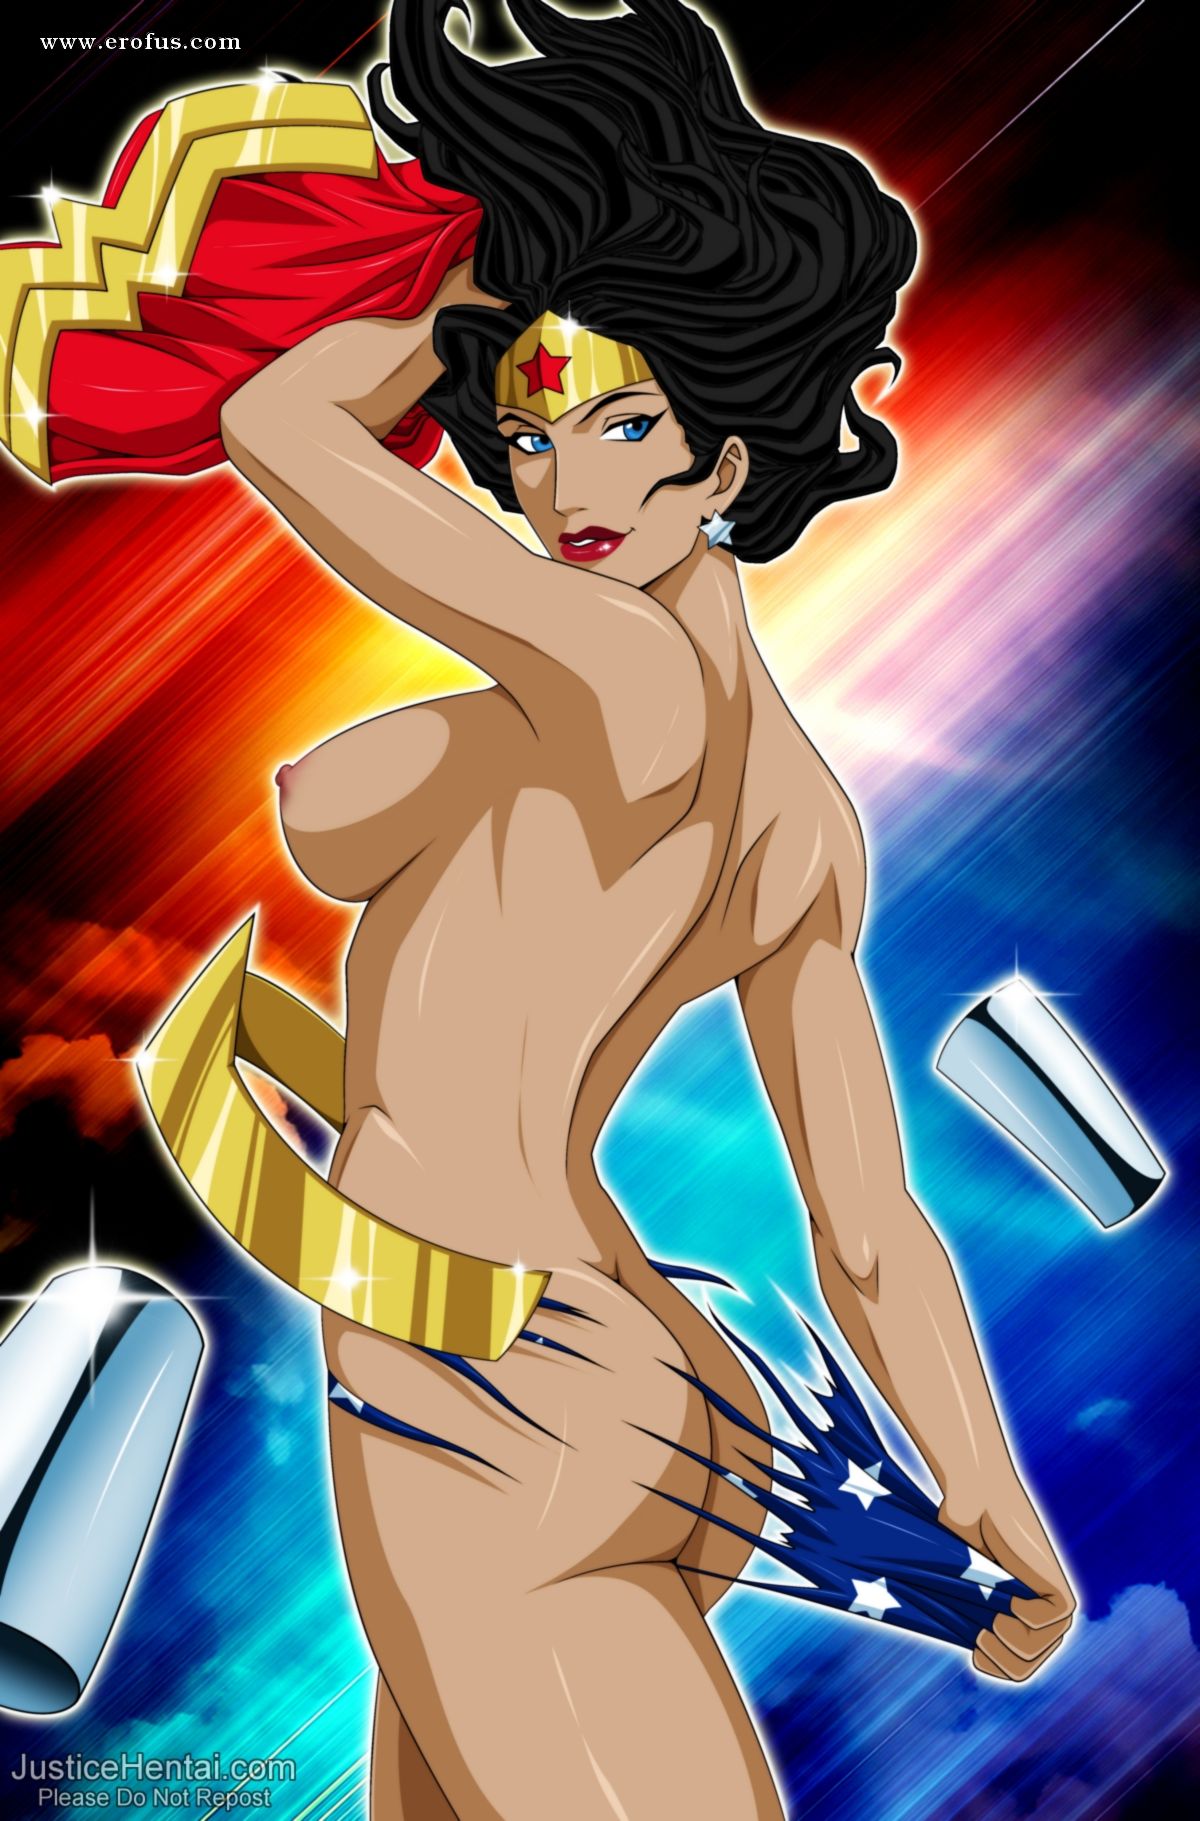 Page Justicehentai Comics Galleries Superheroes Wonder Woman